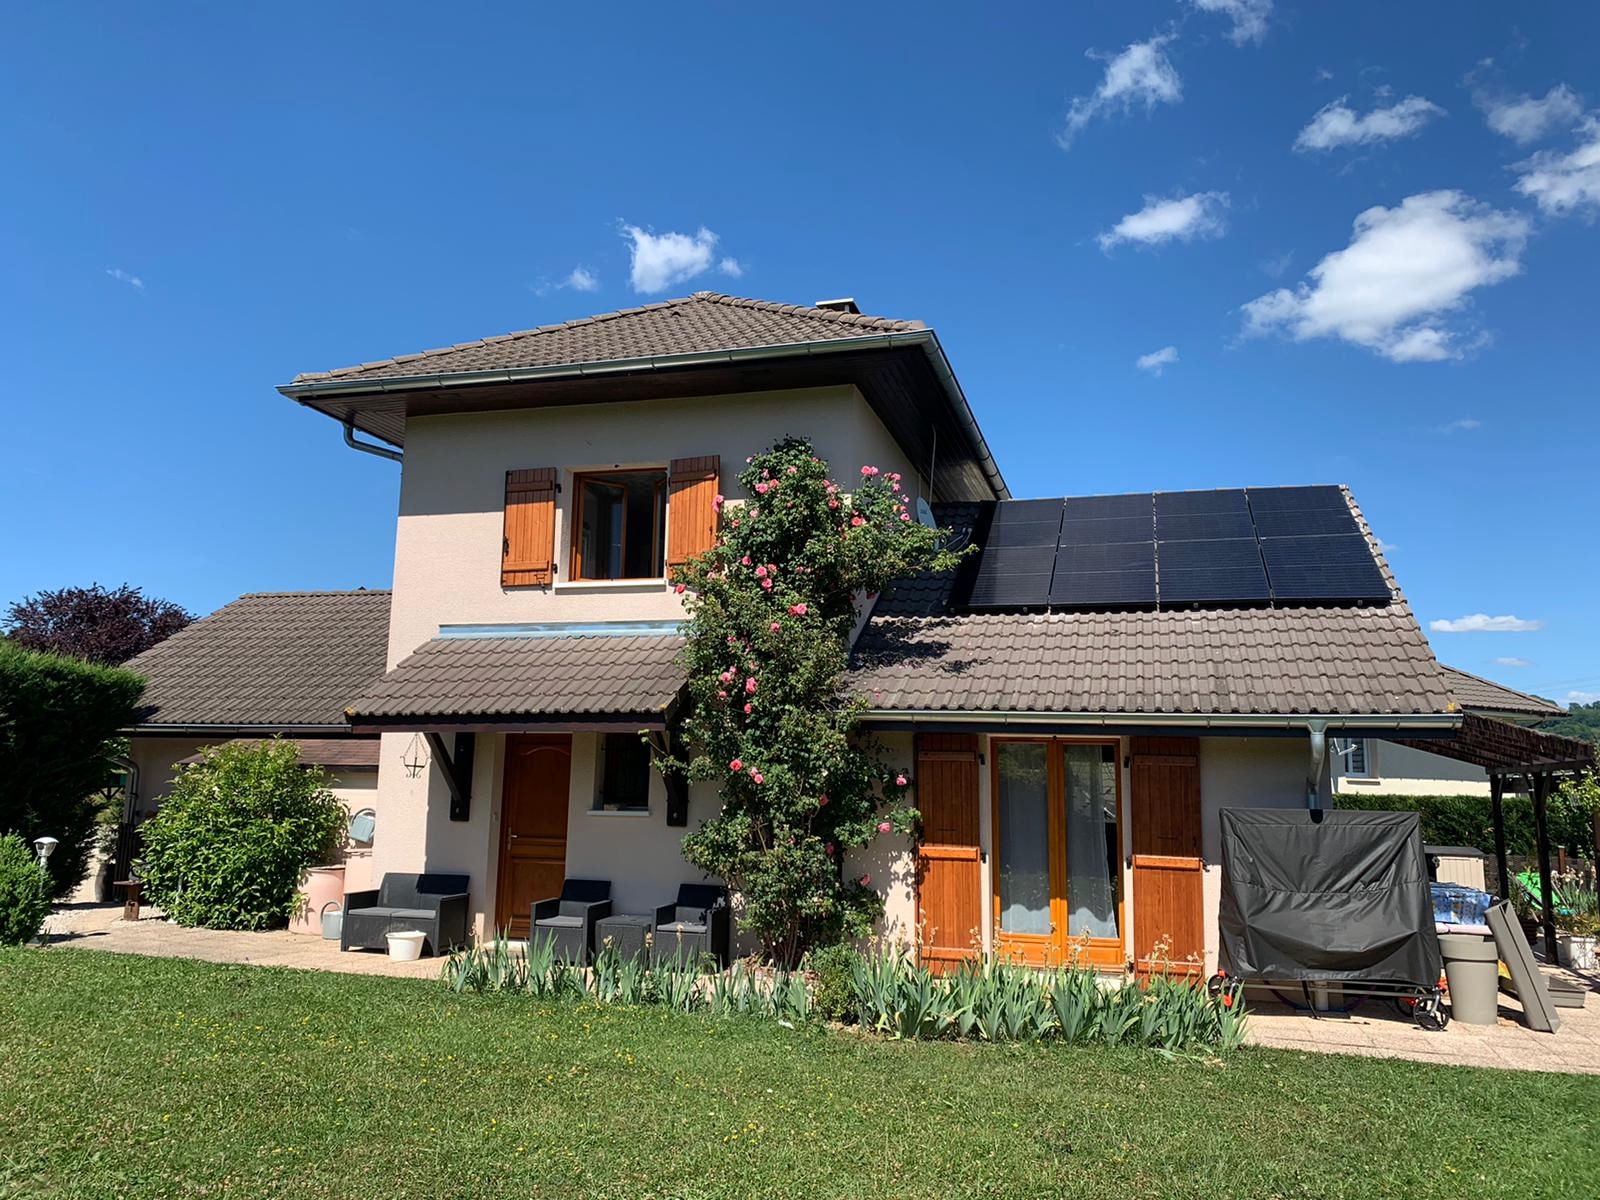 energies services France installation solaire photovoltaïque panneaux onduleurs Dualsun Enphase autoconsommation Haute Savoie Versonnex economie energie